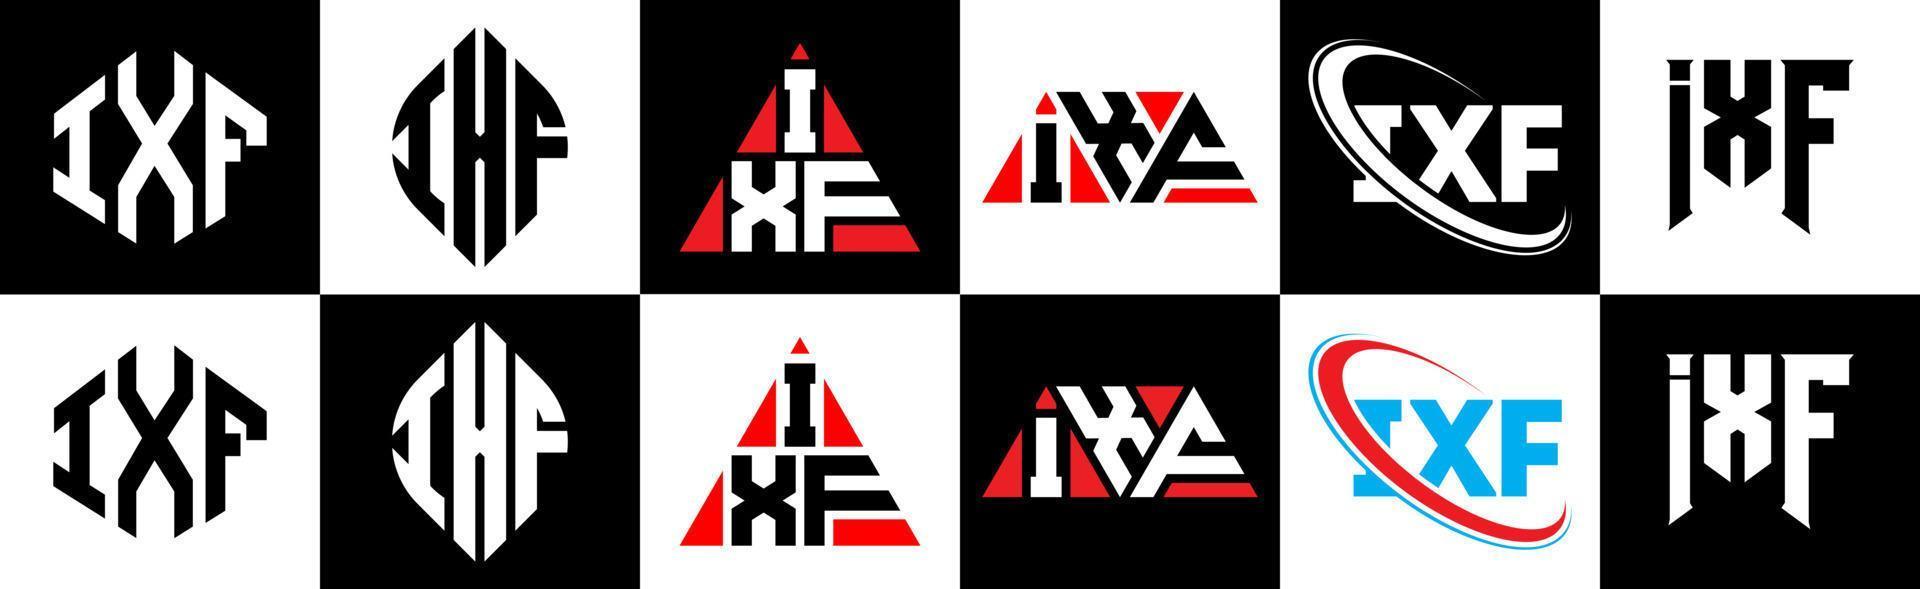 Diseño de logotipo de letra ixf en seis estilos. polígono ixf, círculo, triángulo, hexágono, estilo plano y simple con logotipo de letra de variación de color blanco y negro en una mesa de trabajo. logotipo minimalista y clásico de ixf vector